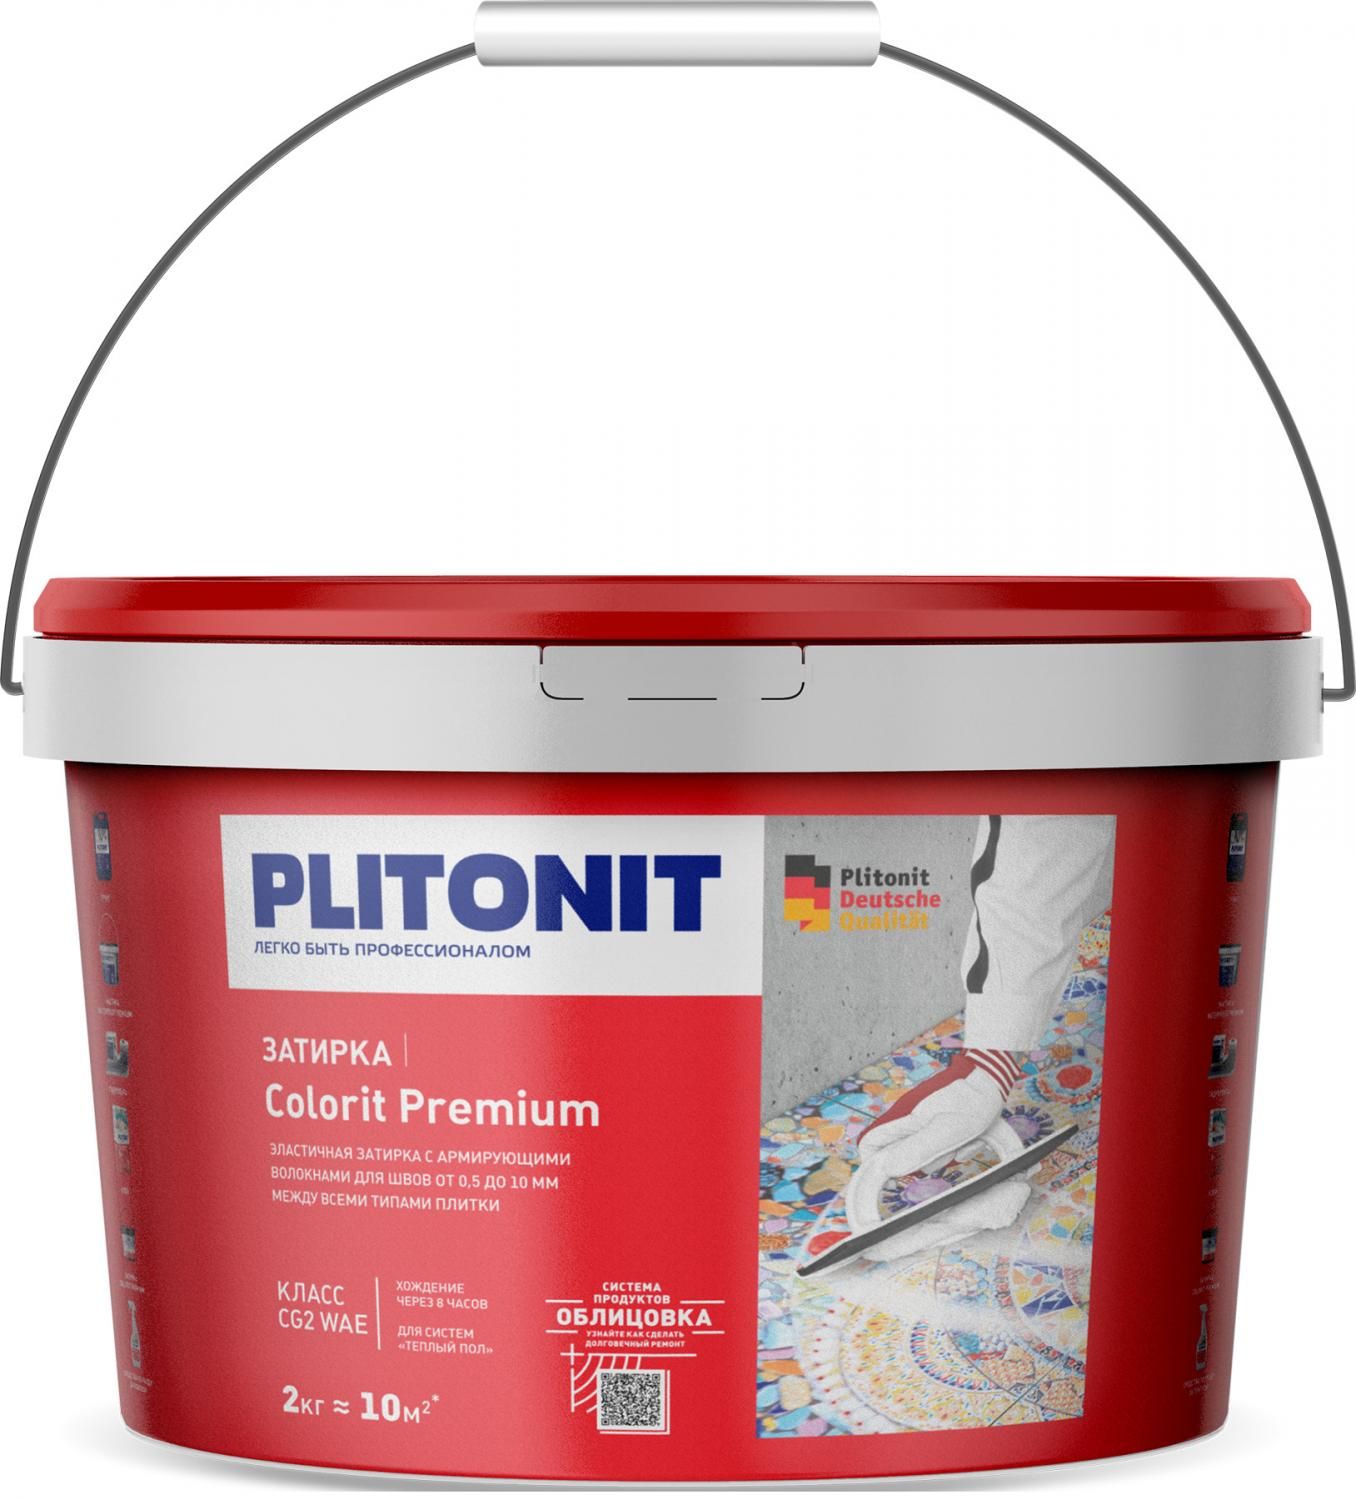 Купить Затирка Plitonit Colorit Premium темно-коричневая 2 кг цементная